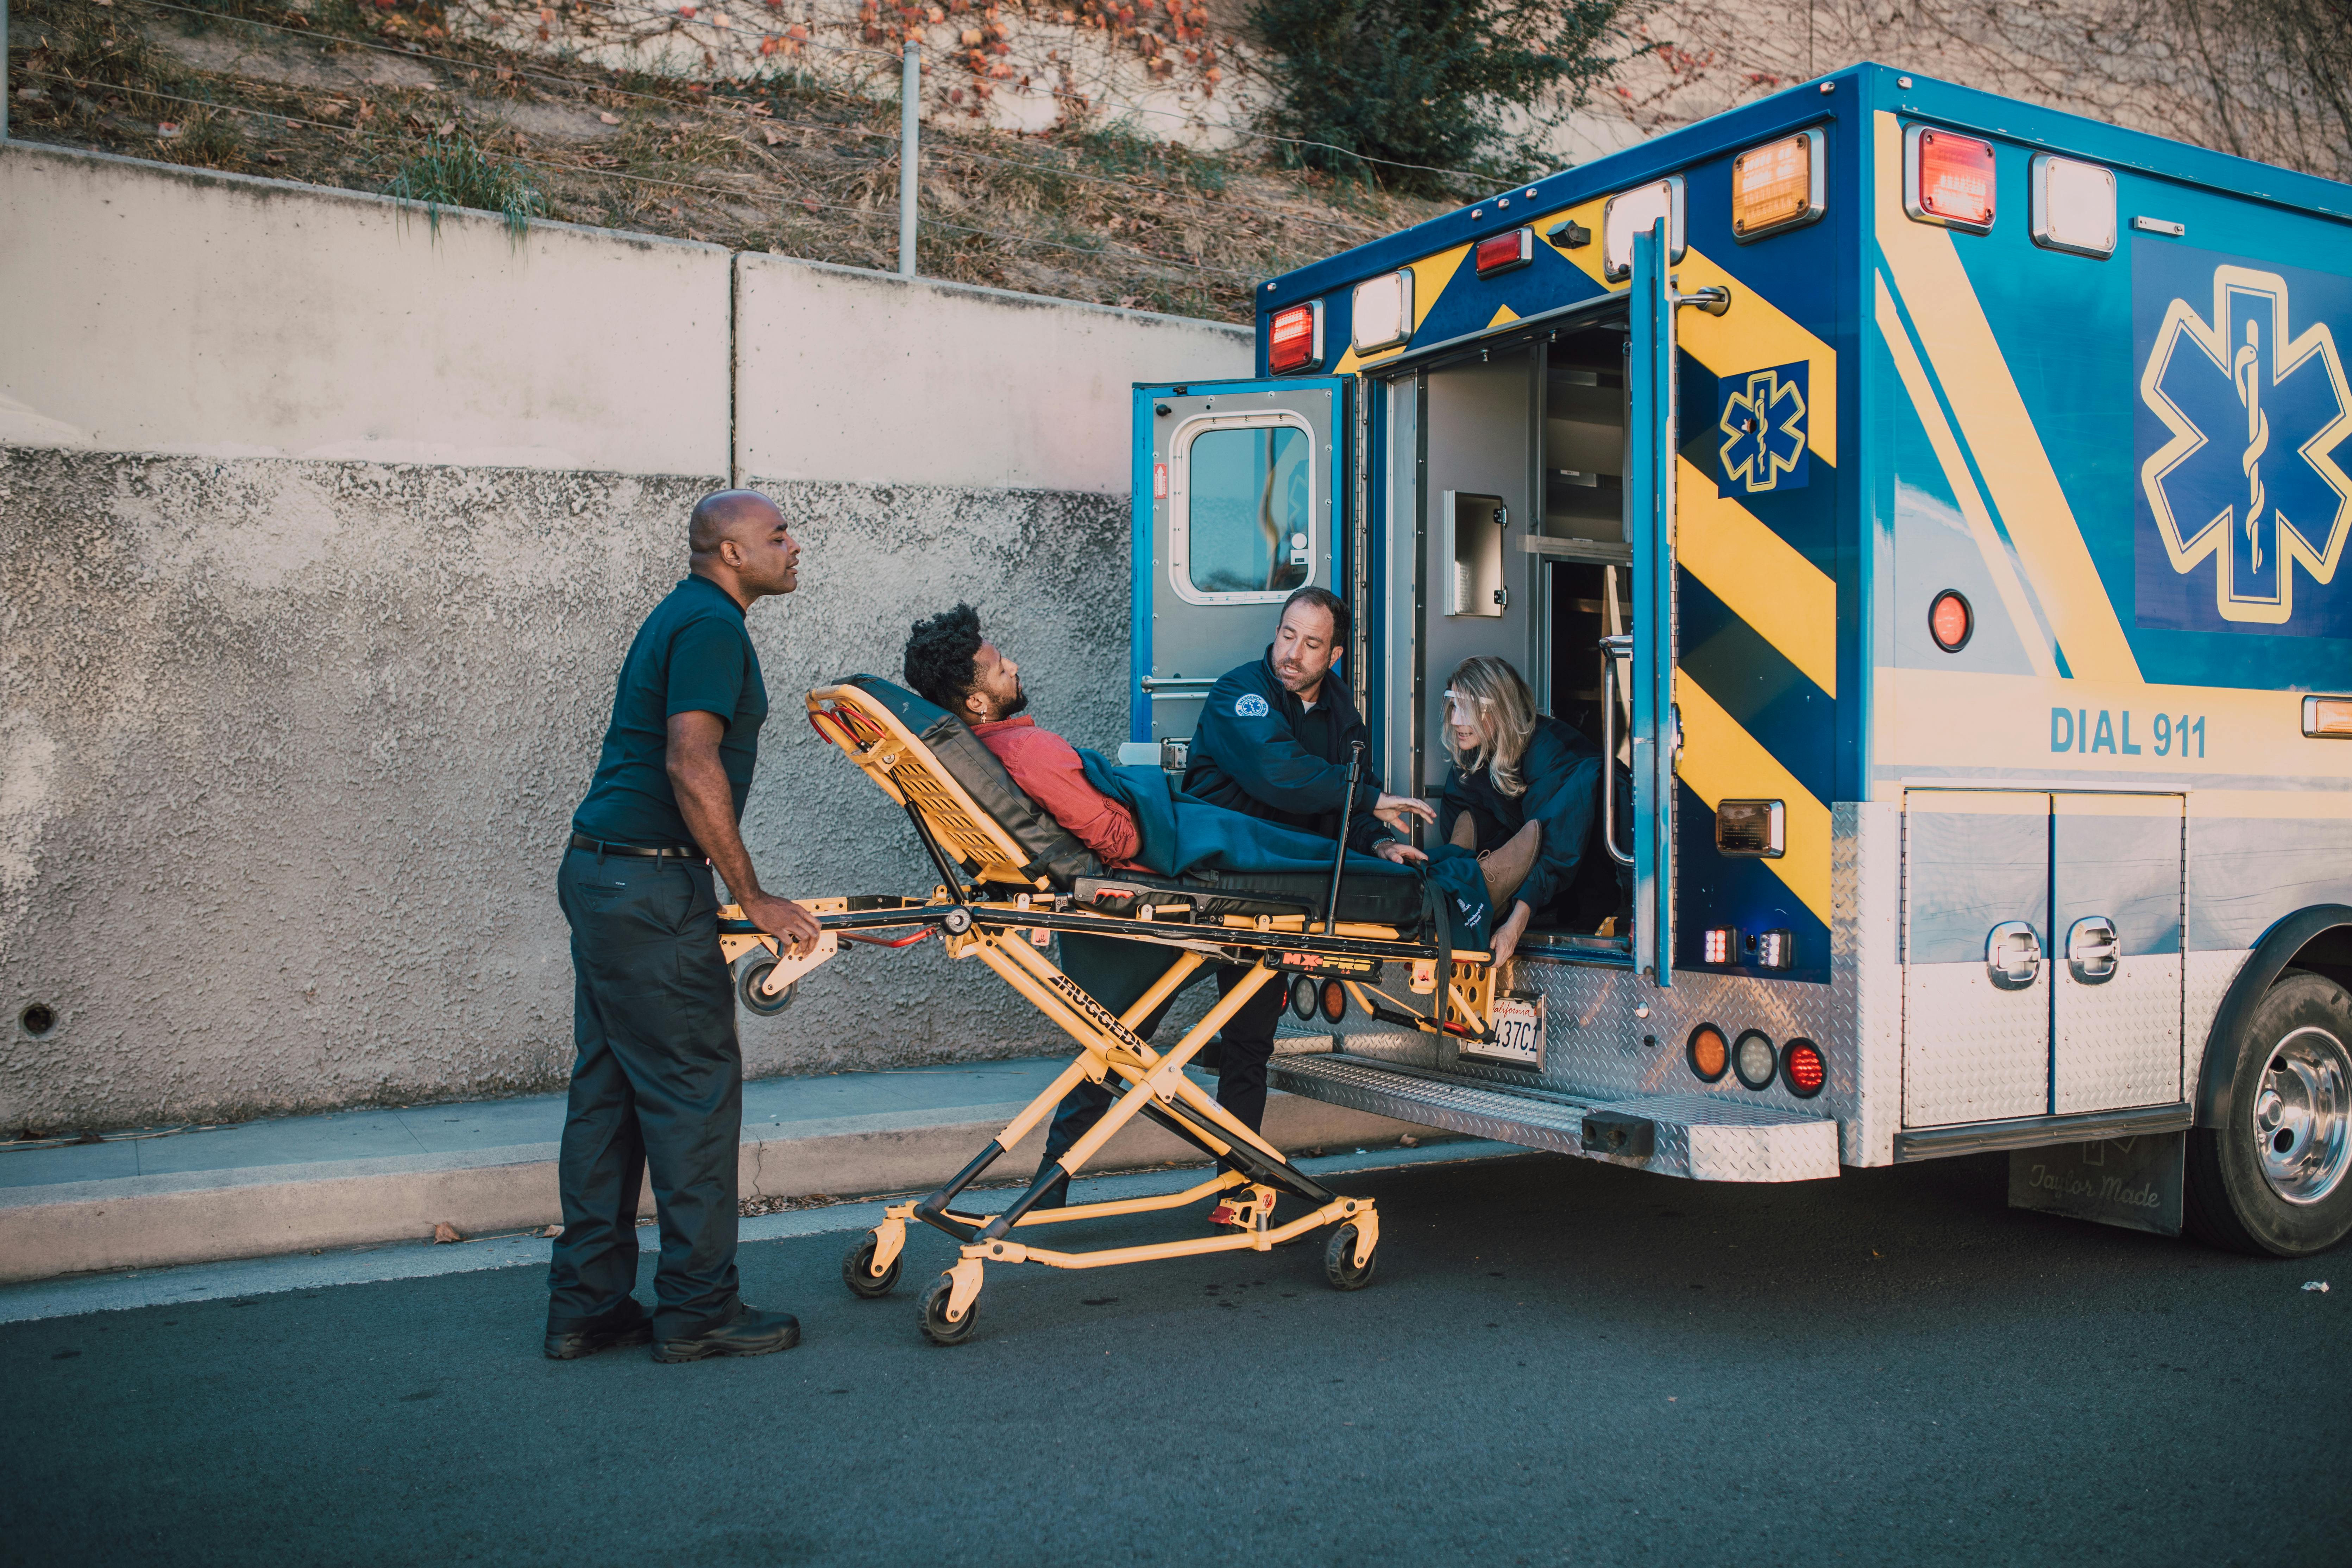 + Fotos y Imágenes de Ambulancia Gratis · Banco de Fotos Gratis